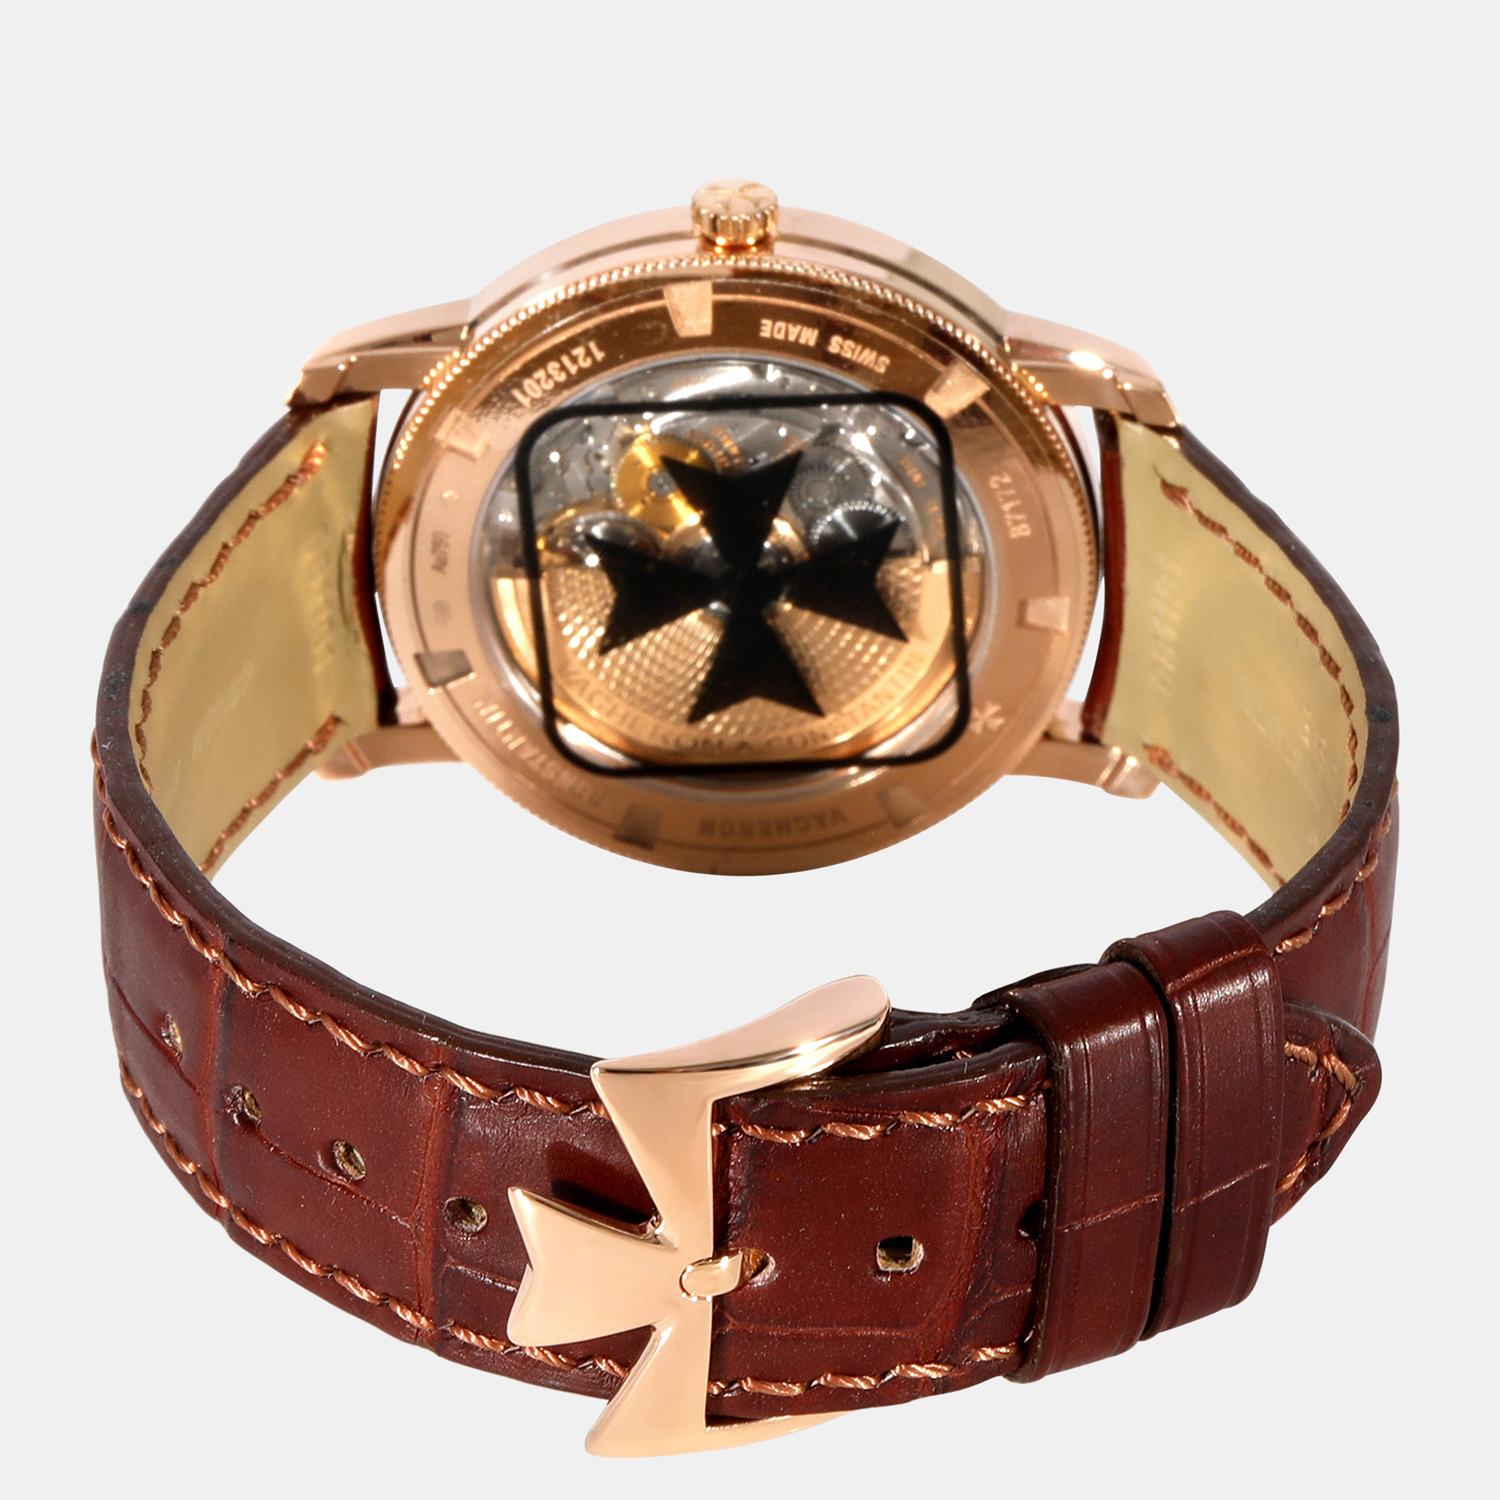 Vacheron Constantin Silver 18k Rose Gold Patrimont Traditionelle 87172/000R-9602 Automatic Men's Wristwatch 38 Mm